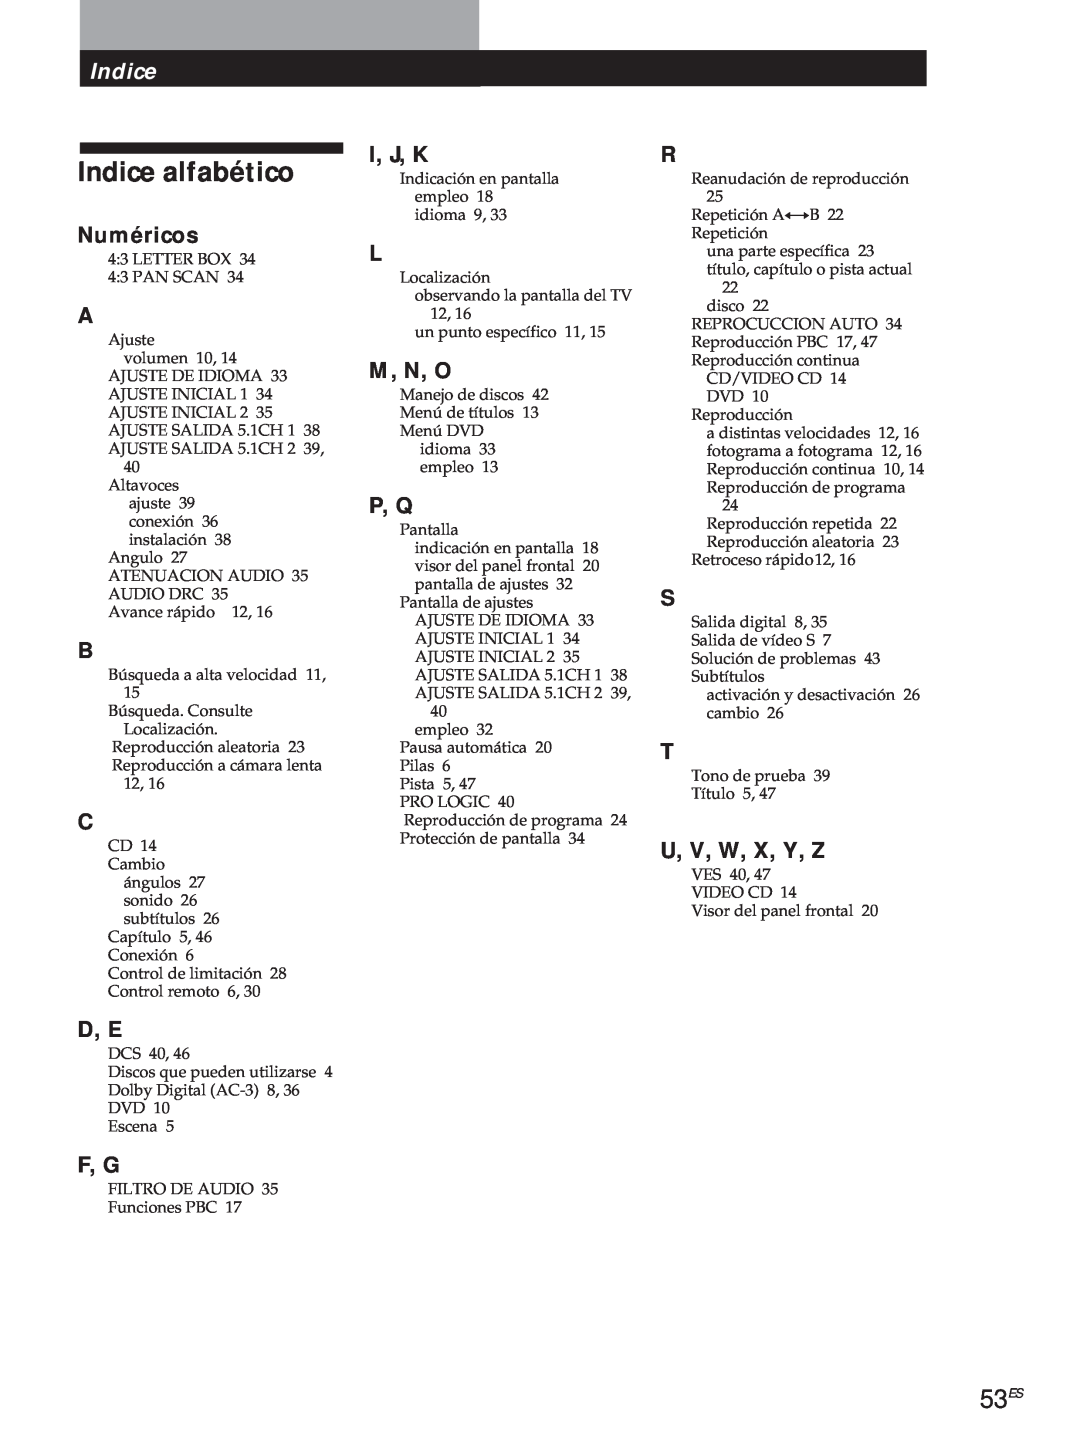 Sony DVP-S500D manual Indice alfabético, 53ES, Numéricos, U, V, W, X, Y, Z, I, J, K, M, N, O, P, Q, D, E, F, G 